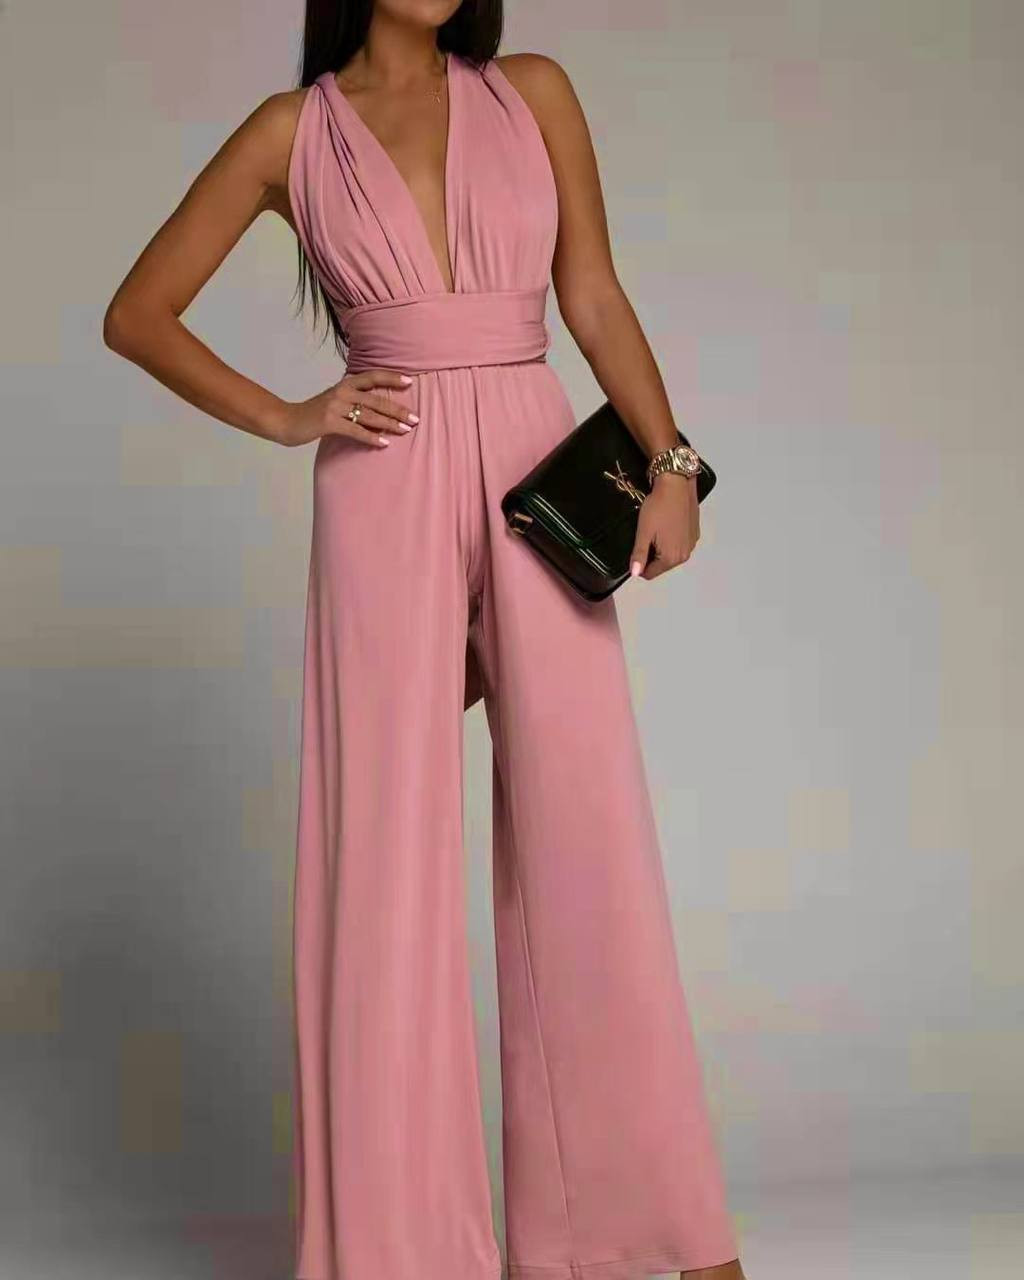 Γυναικεία εντυπωσιακή ολόσωμη φόρμα 4538 ροζ